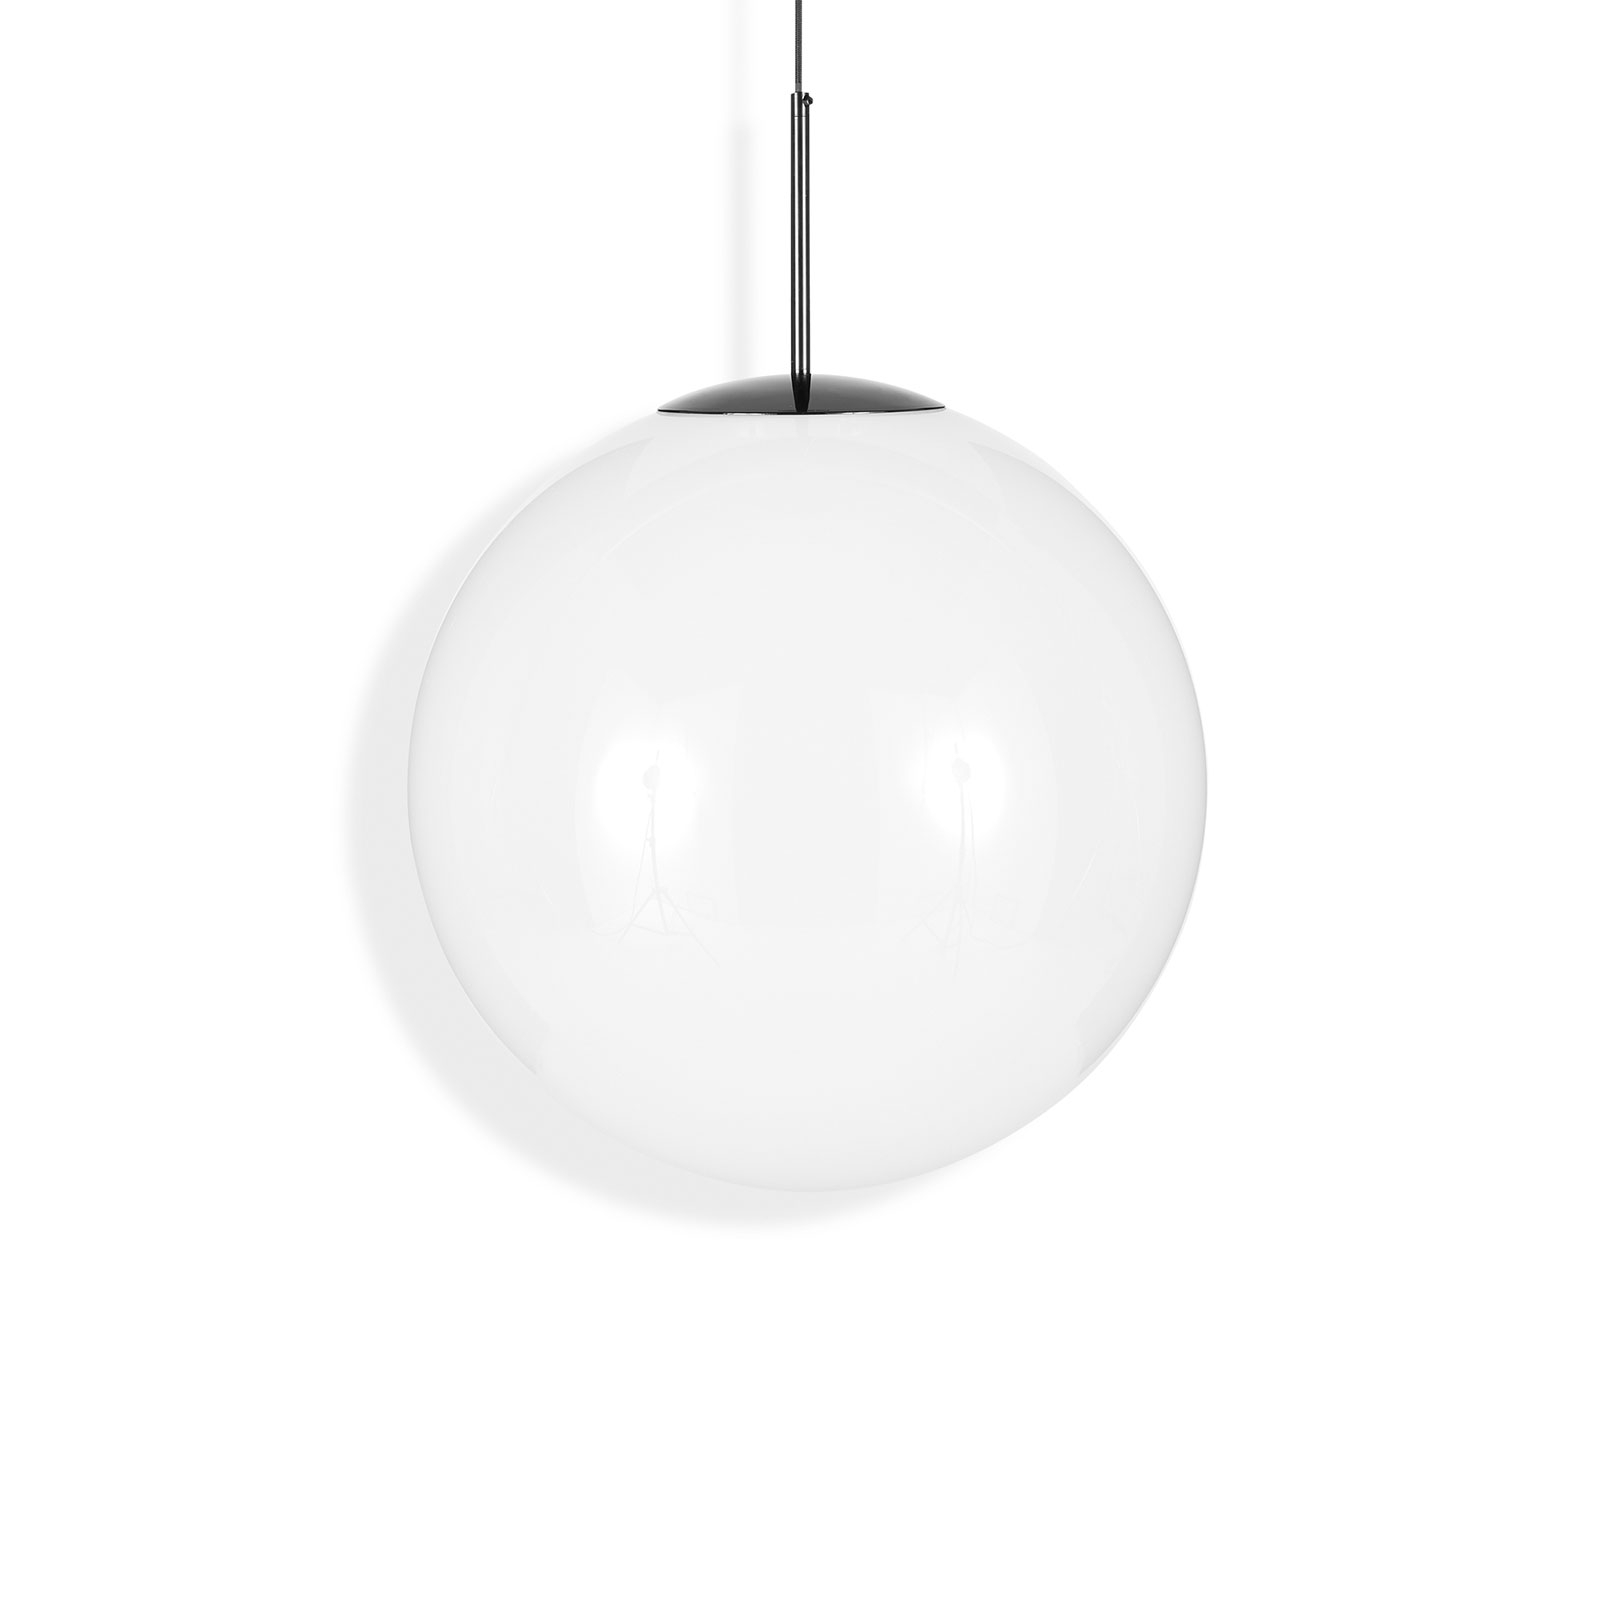 Tom Dixon Globe spherical LED hanging light Ø 50cm